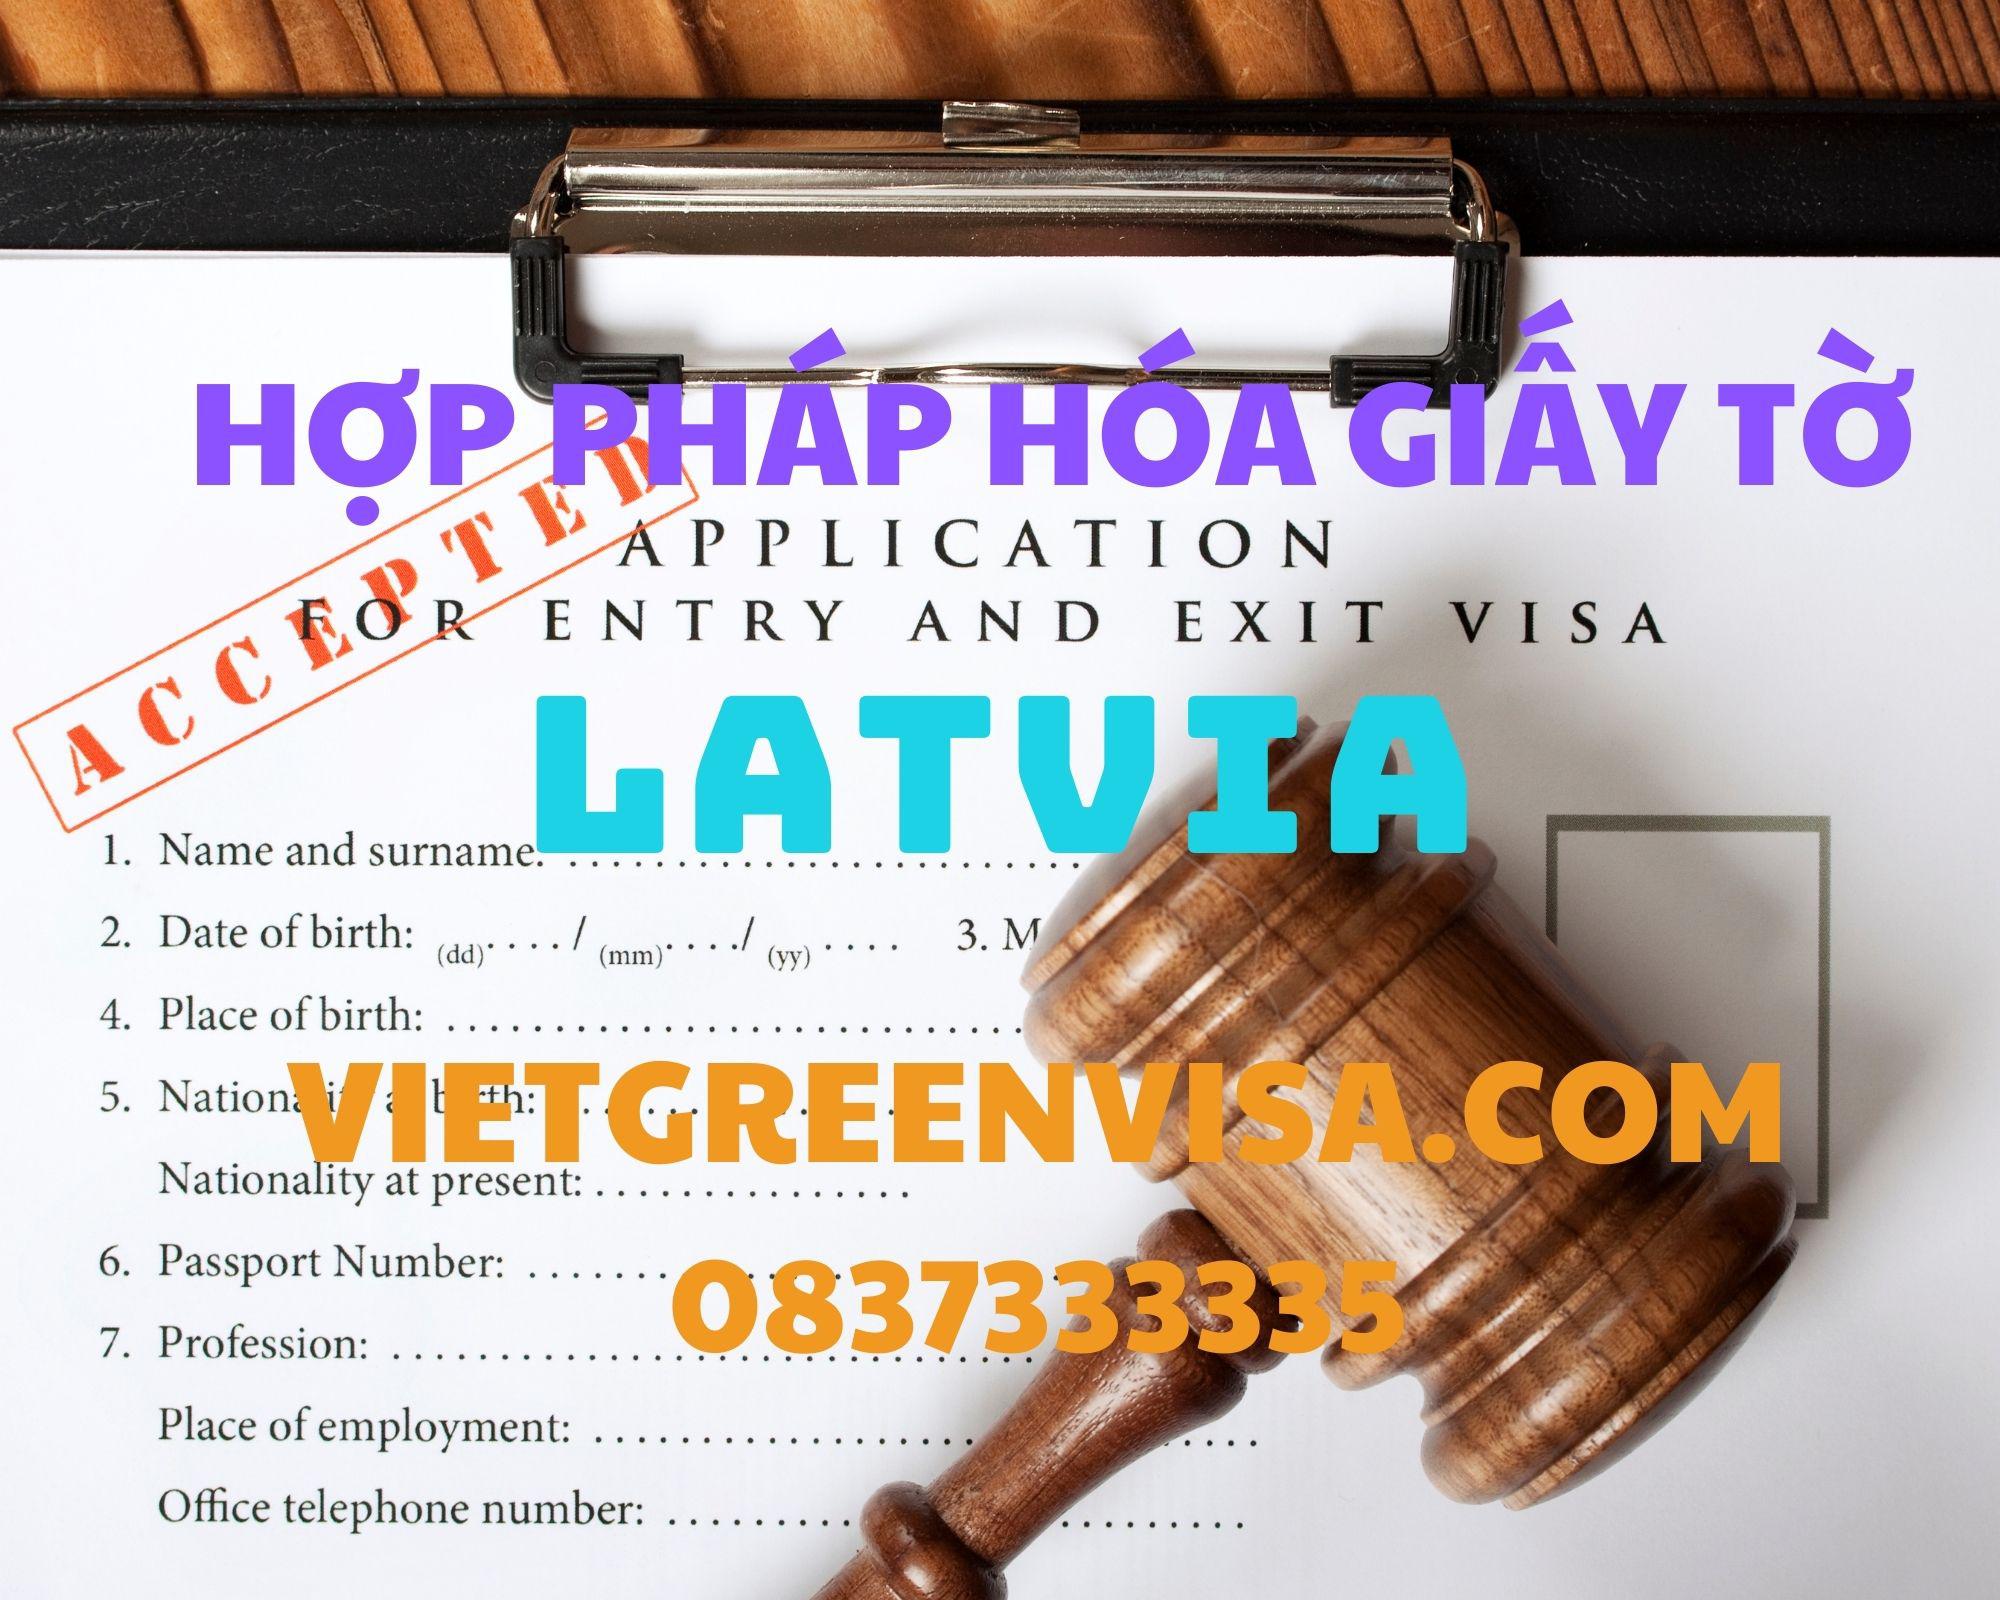  Dịch vụ hợp pháp hóa giấy tờ tại Latvia trọn gói